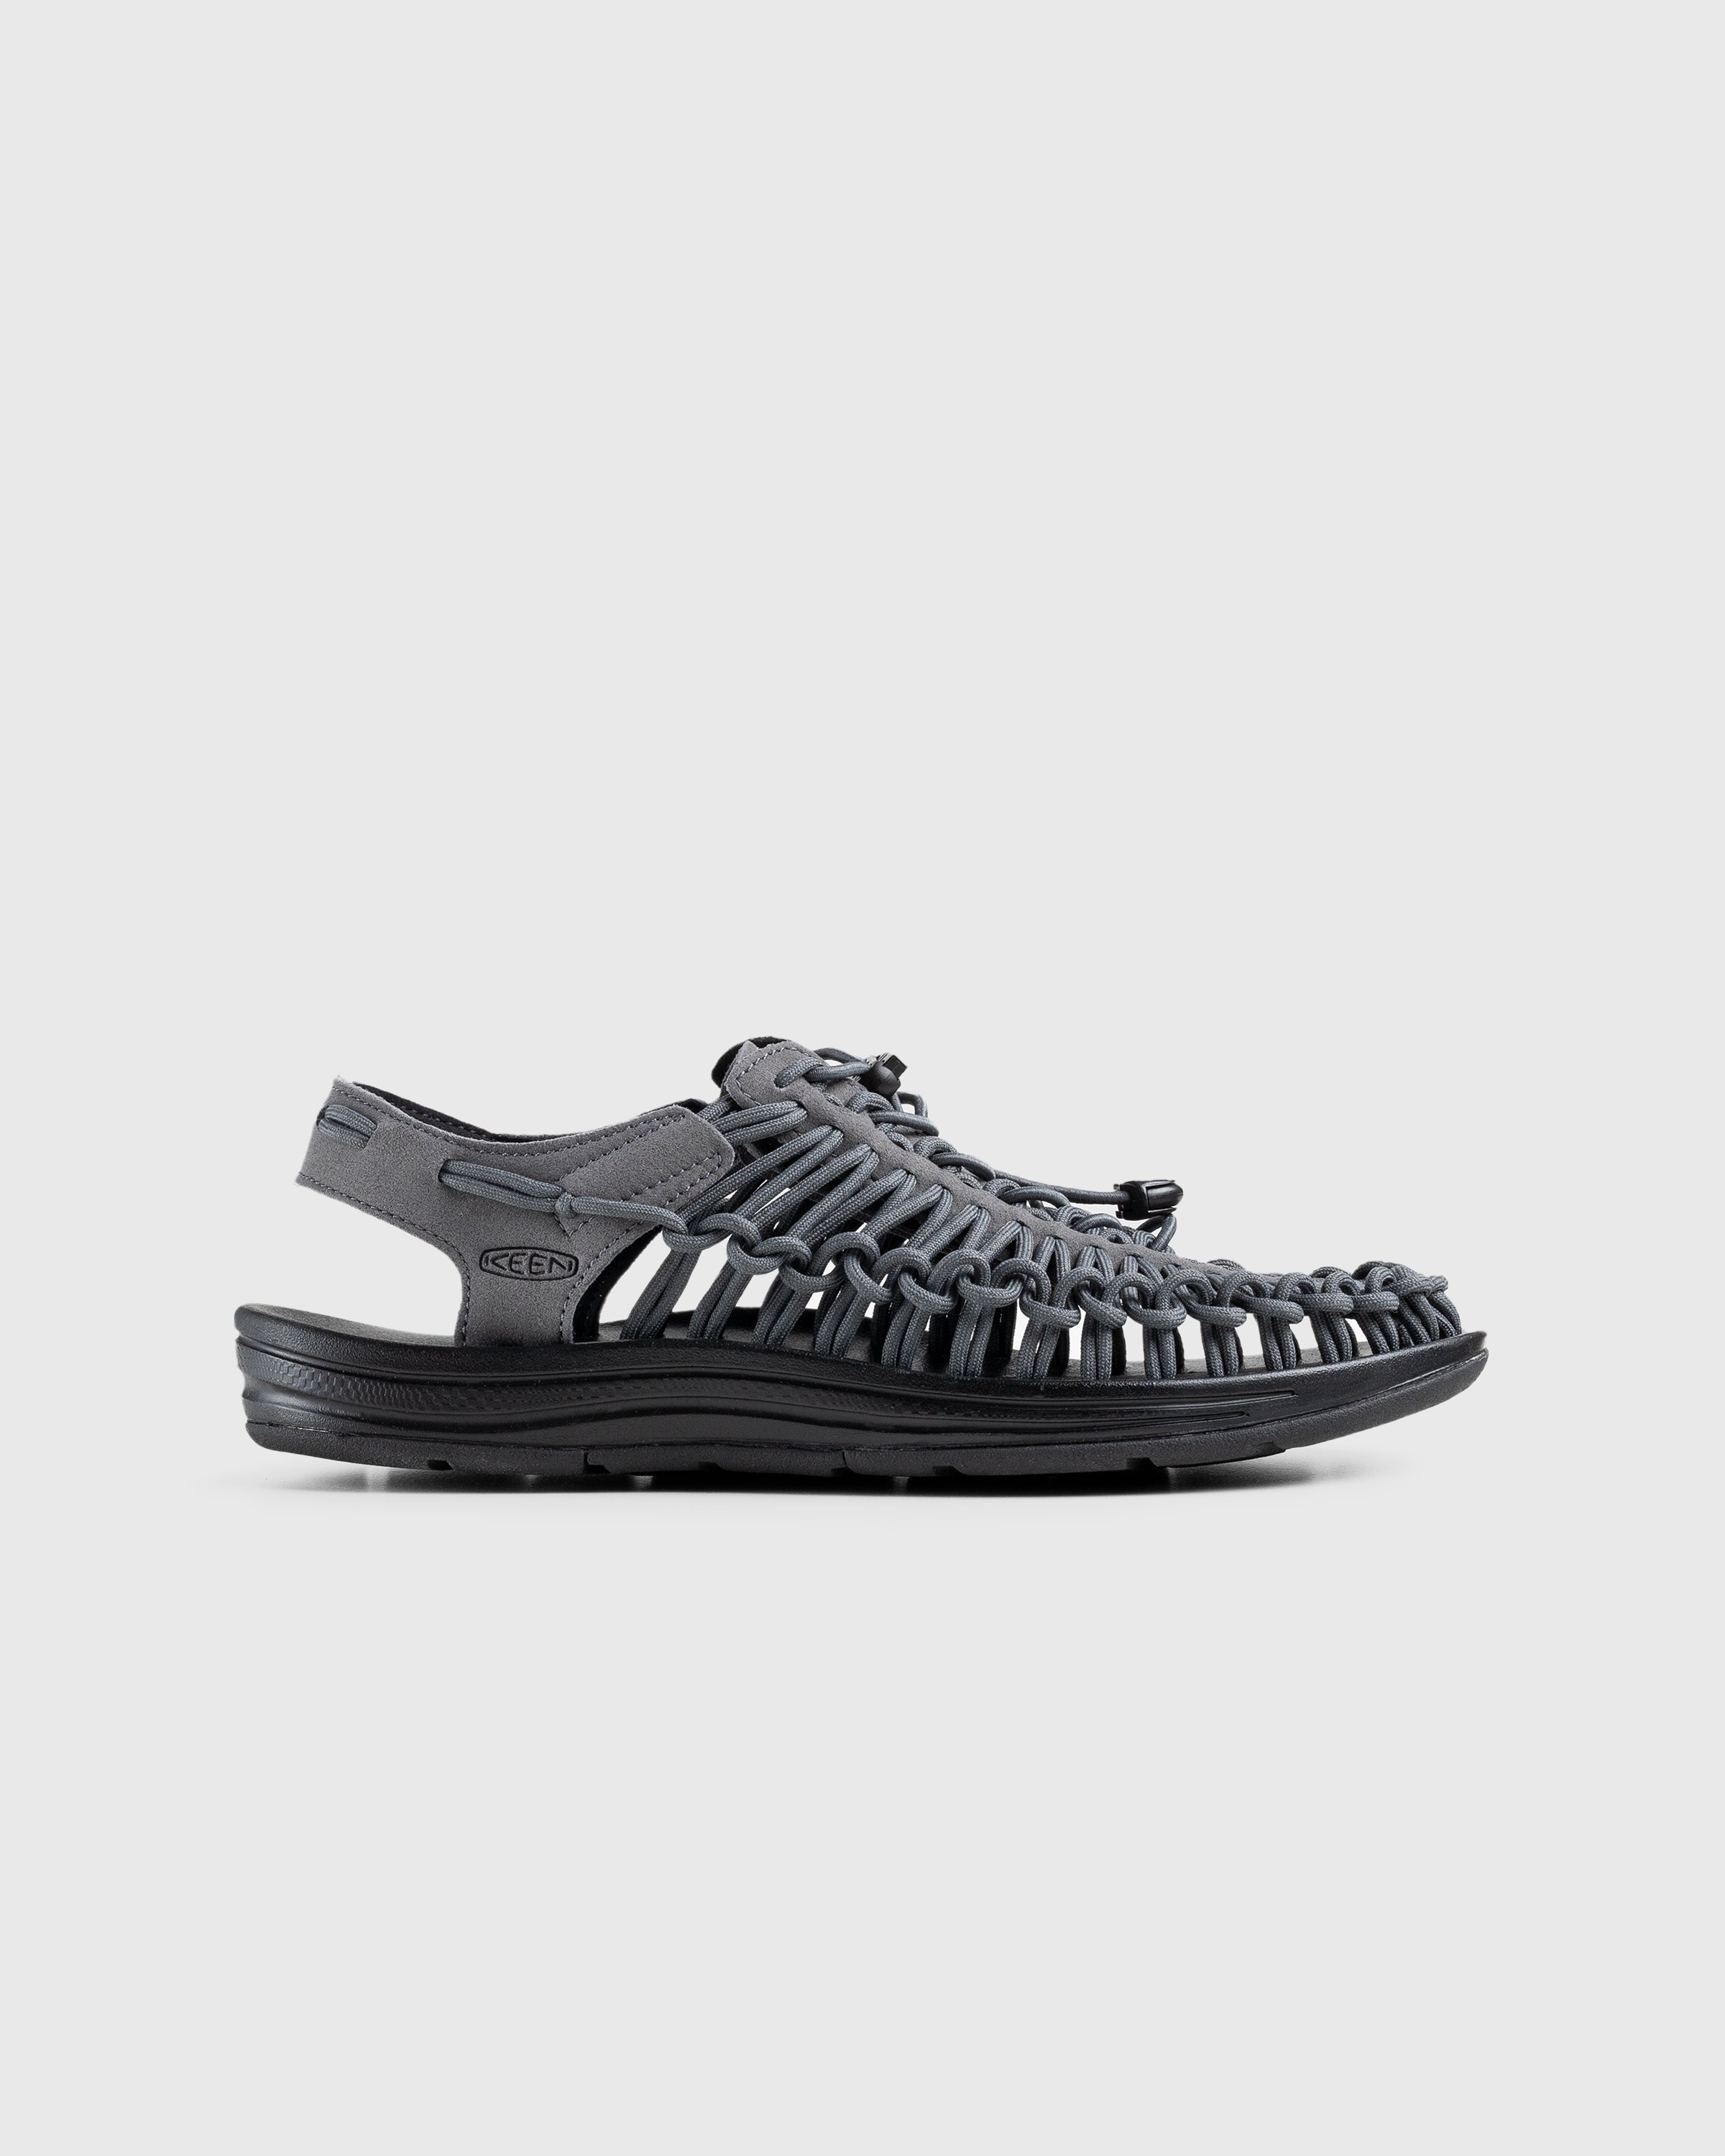 Keen – Uneek Magnet/Black - Sandals & Slides - Grey - Image 1